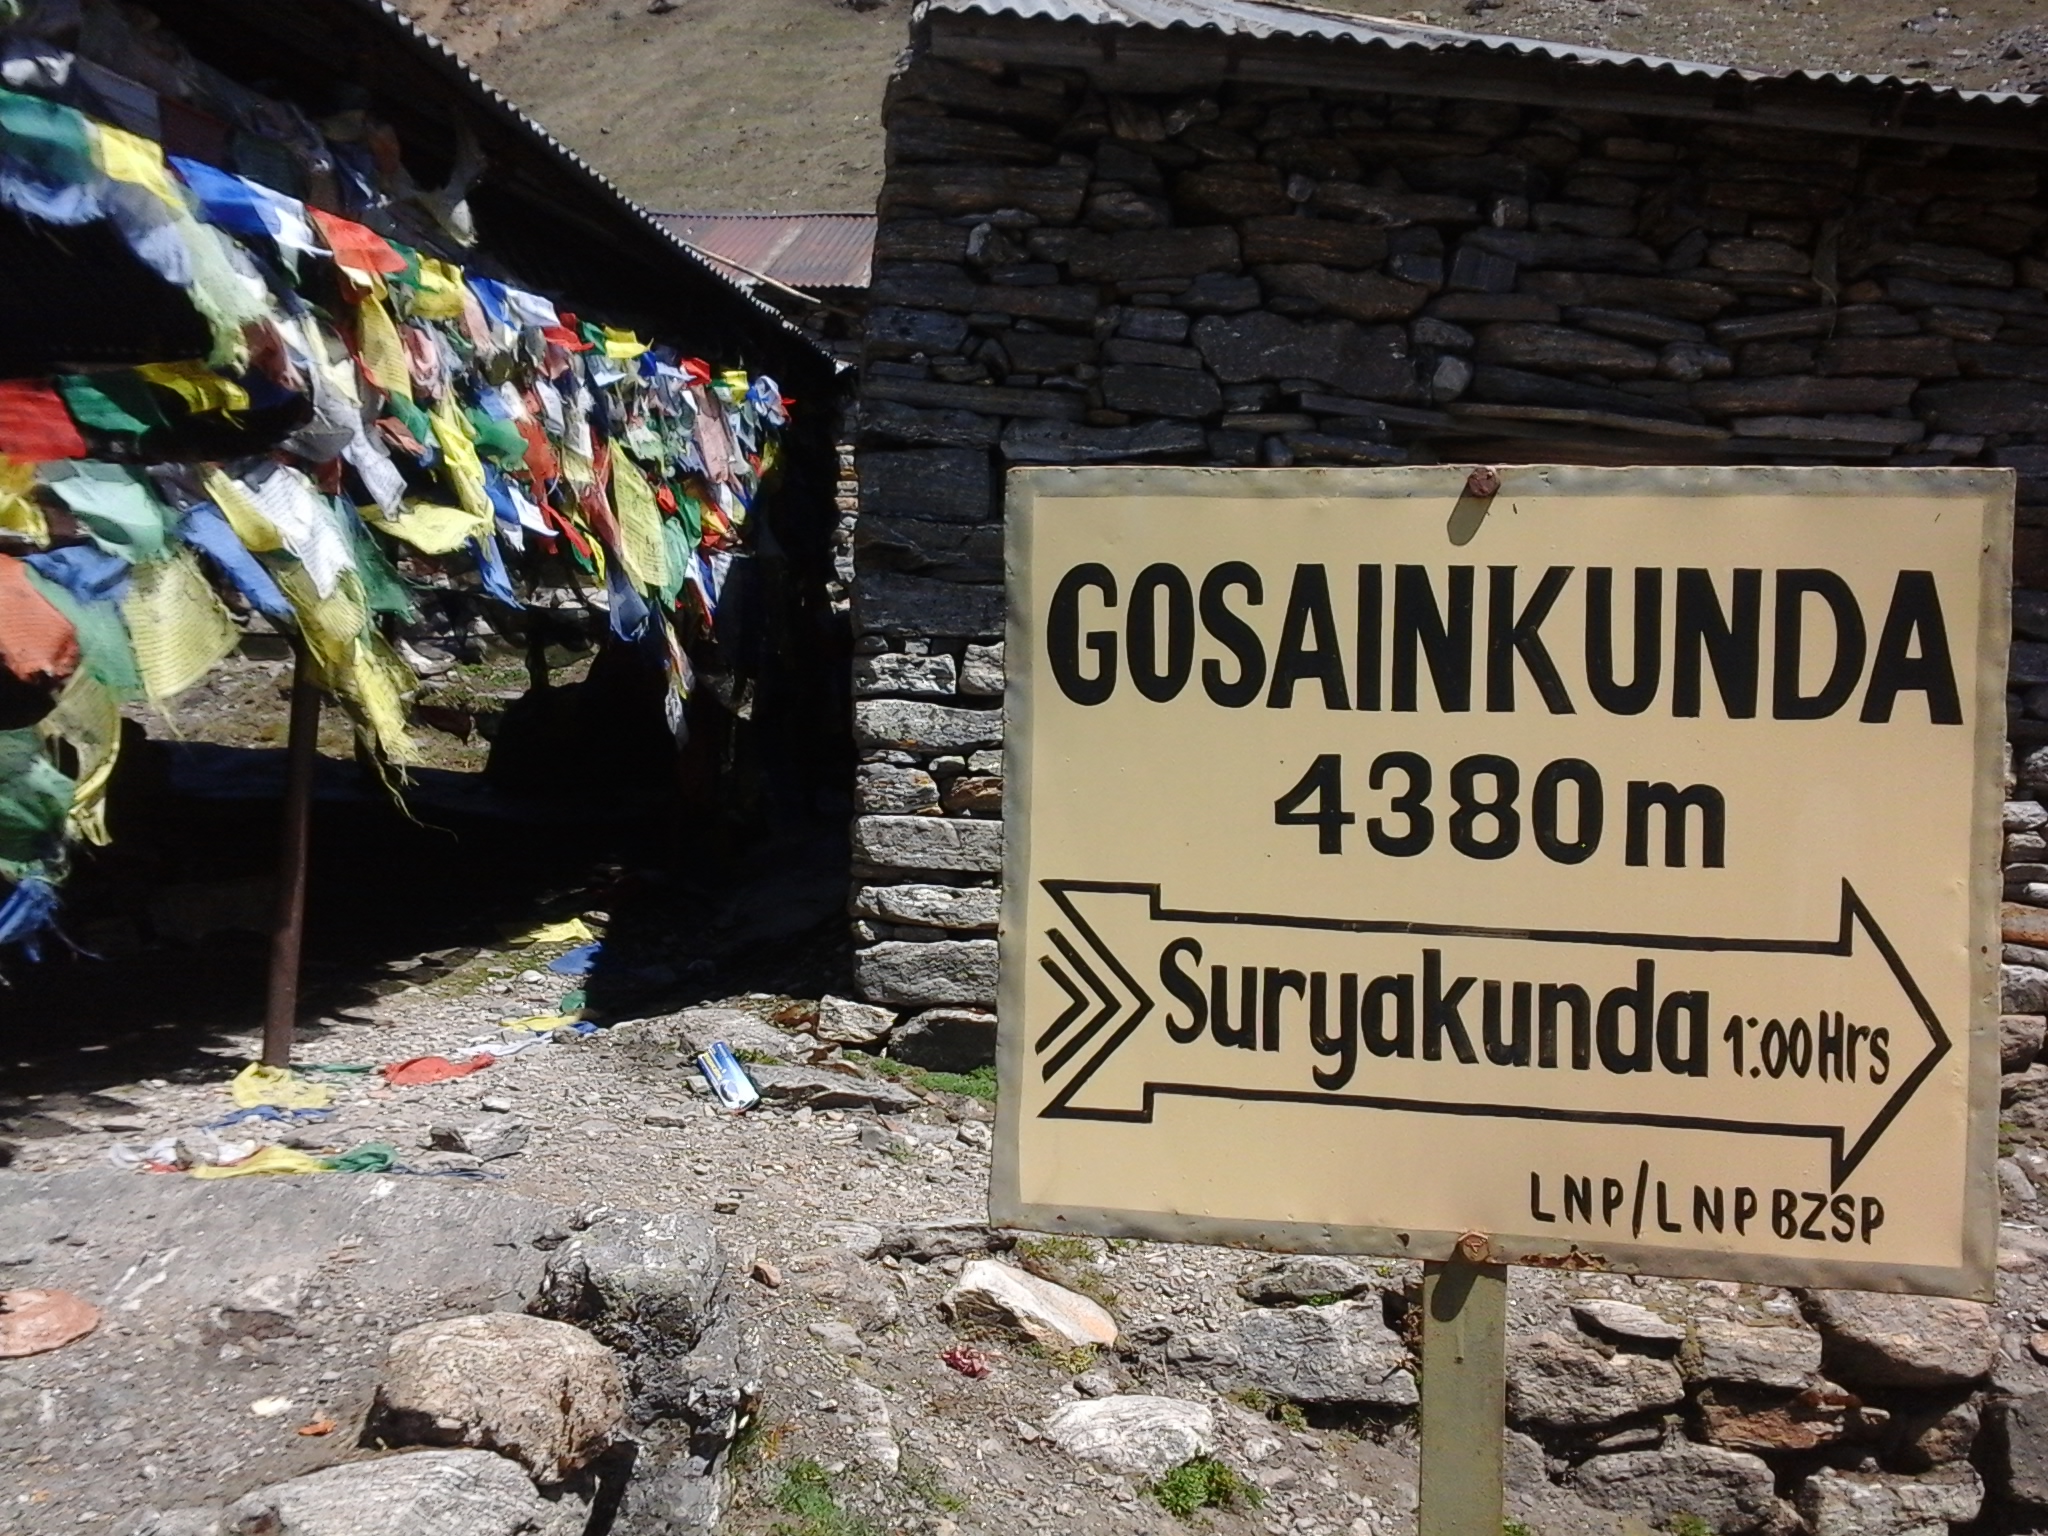 Gosainkunda Lake Trek – 6 days